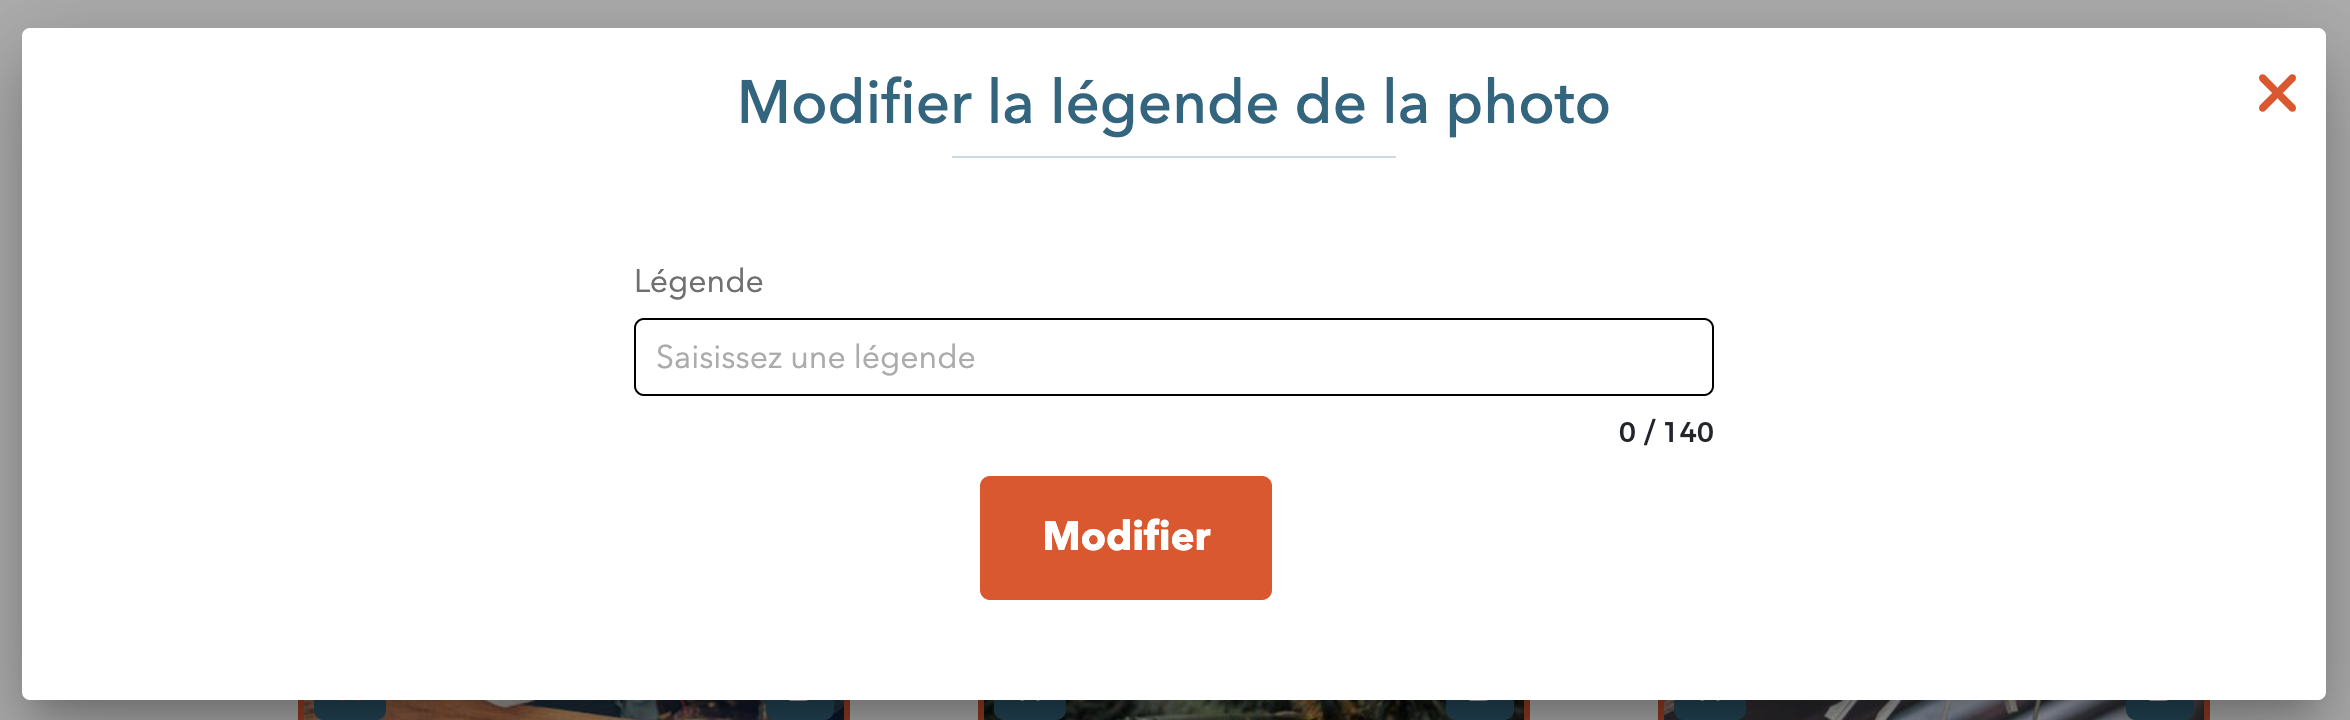 FR-modifier_legende_album.png